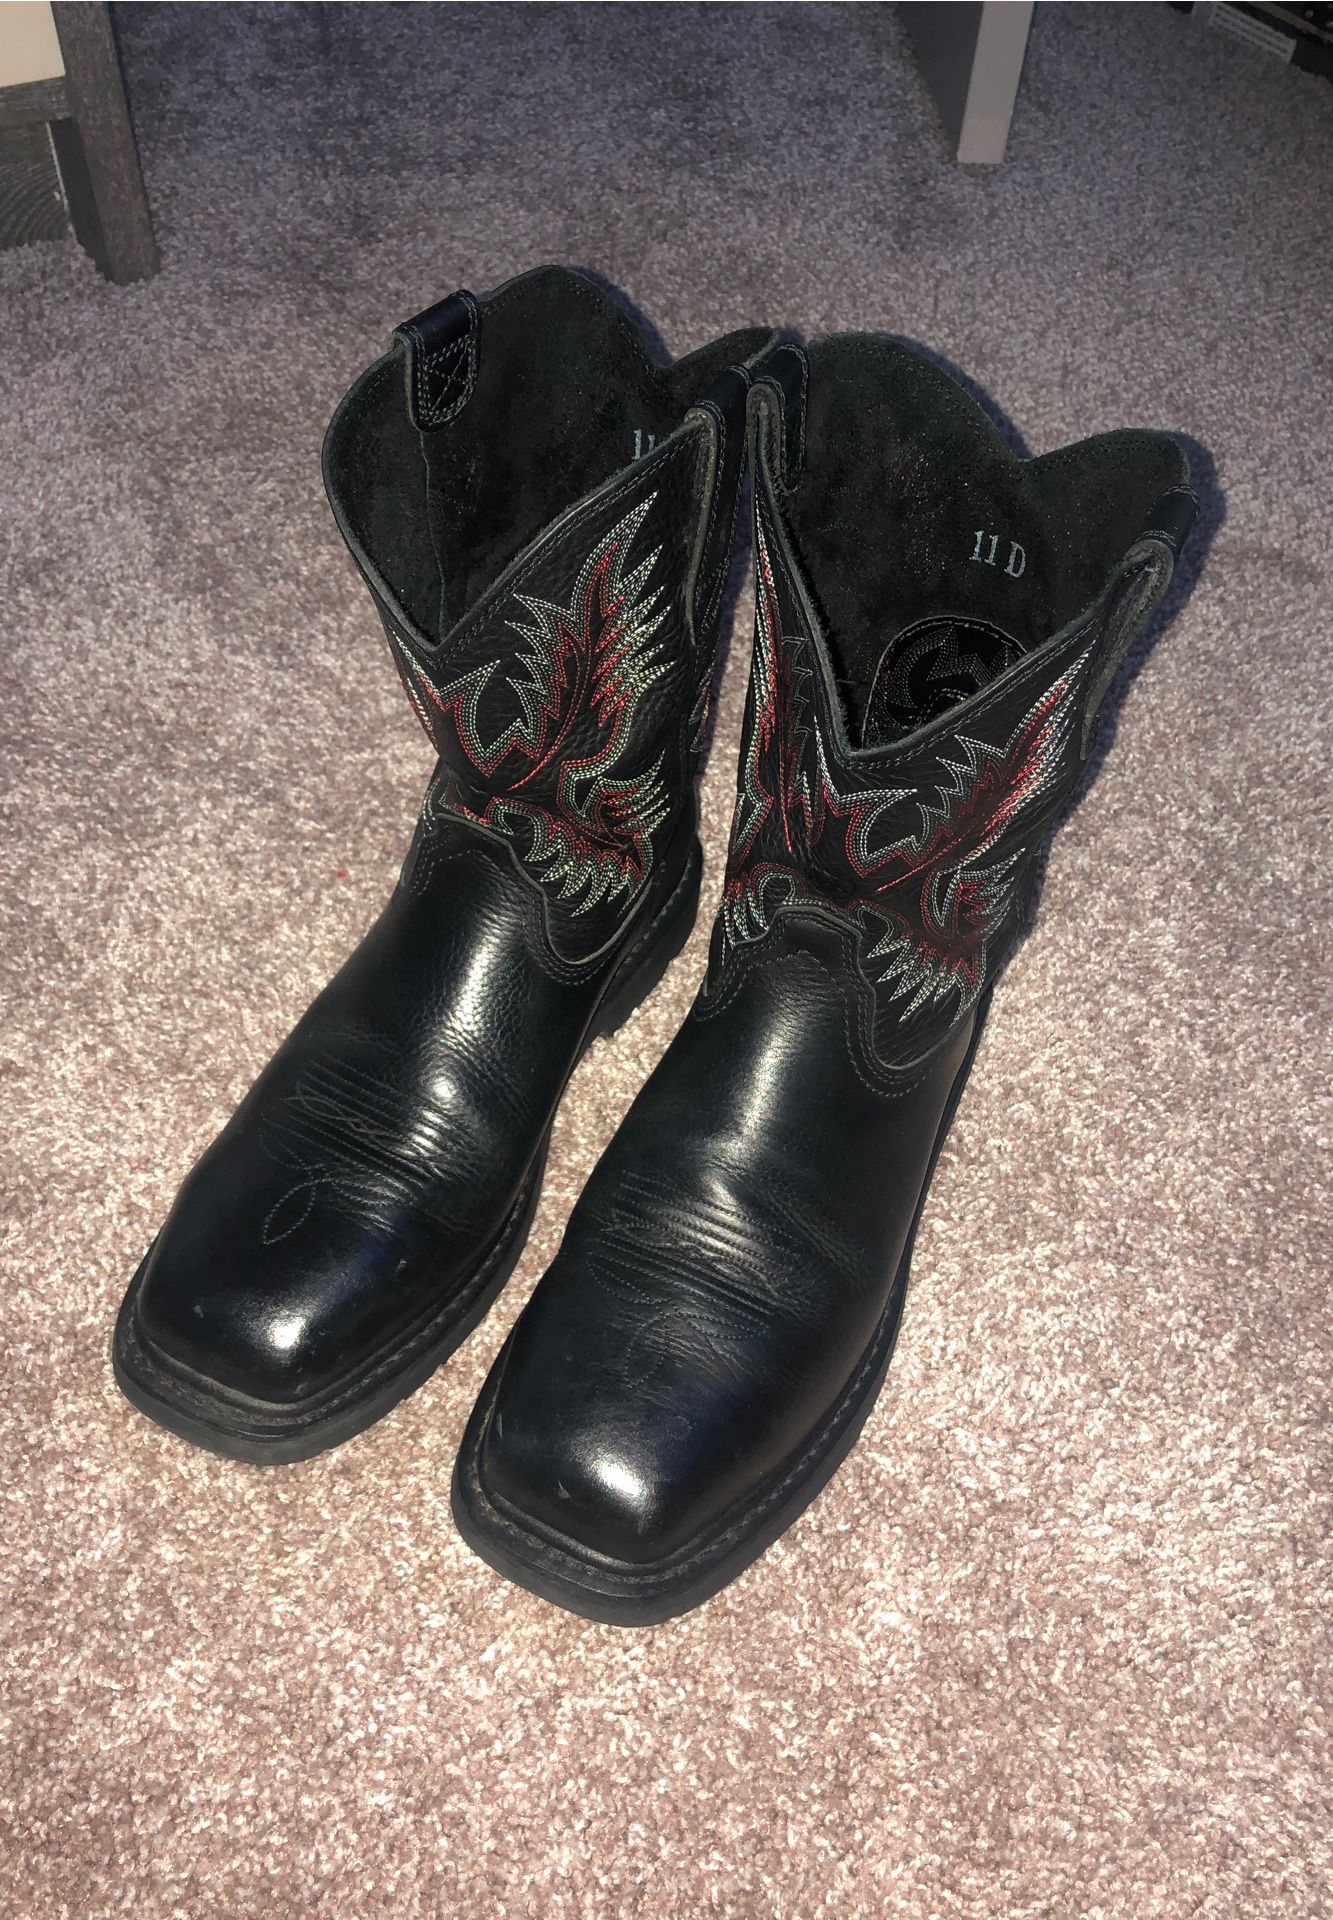 Ariat men's boots steel toe